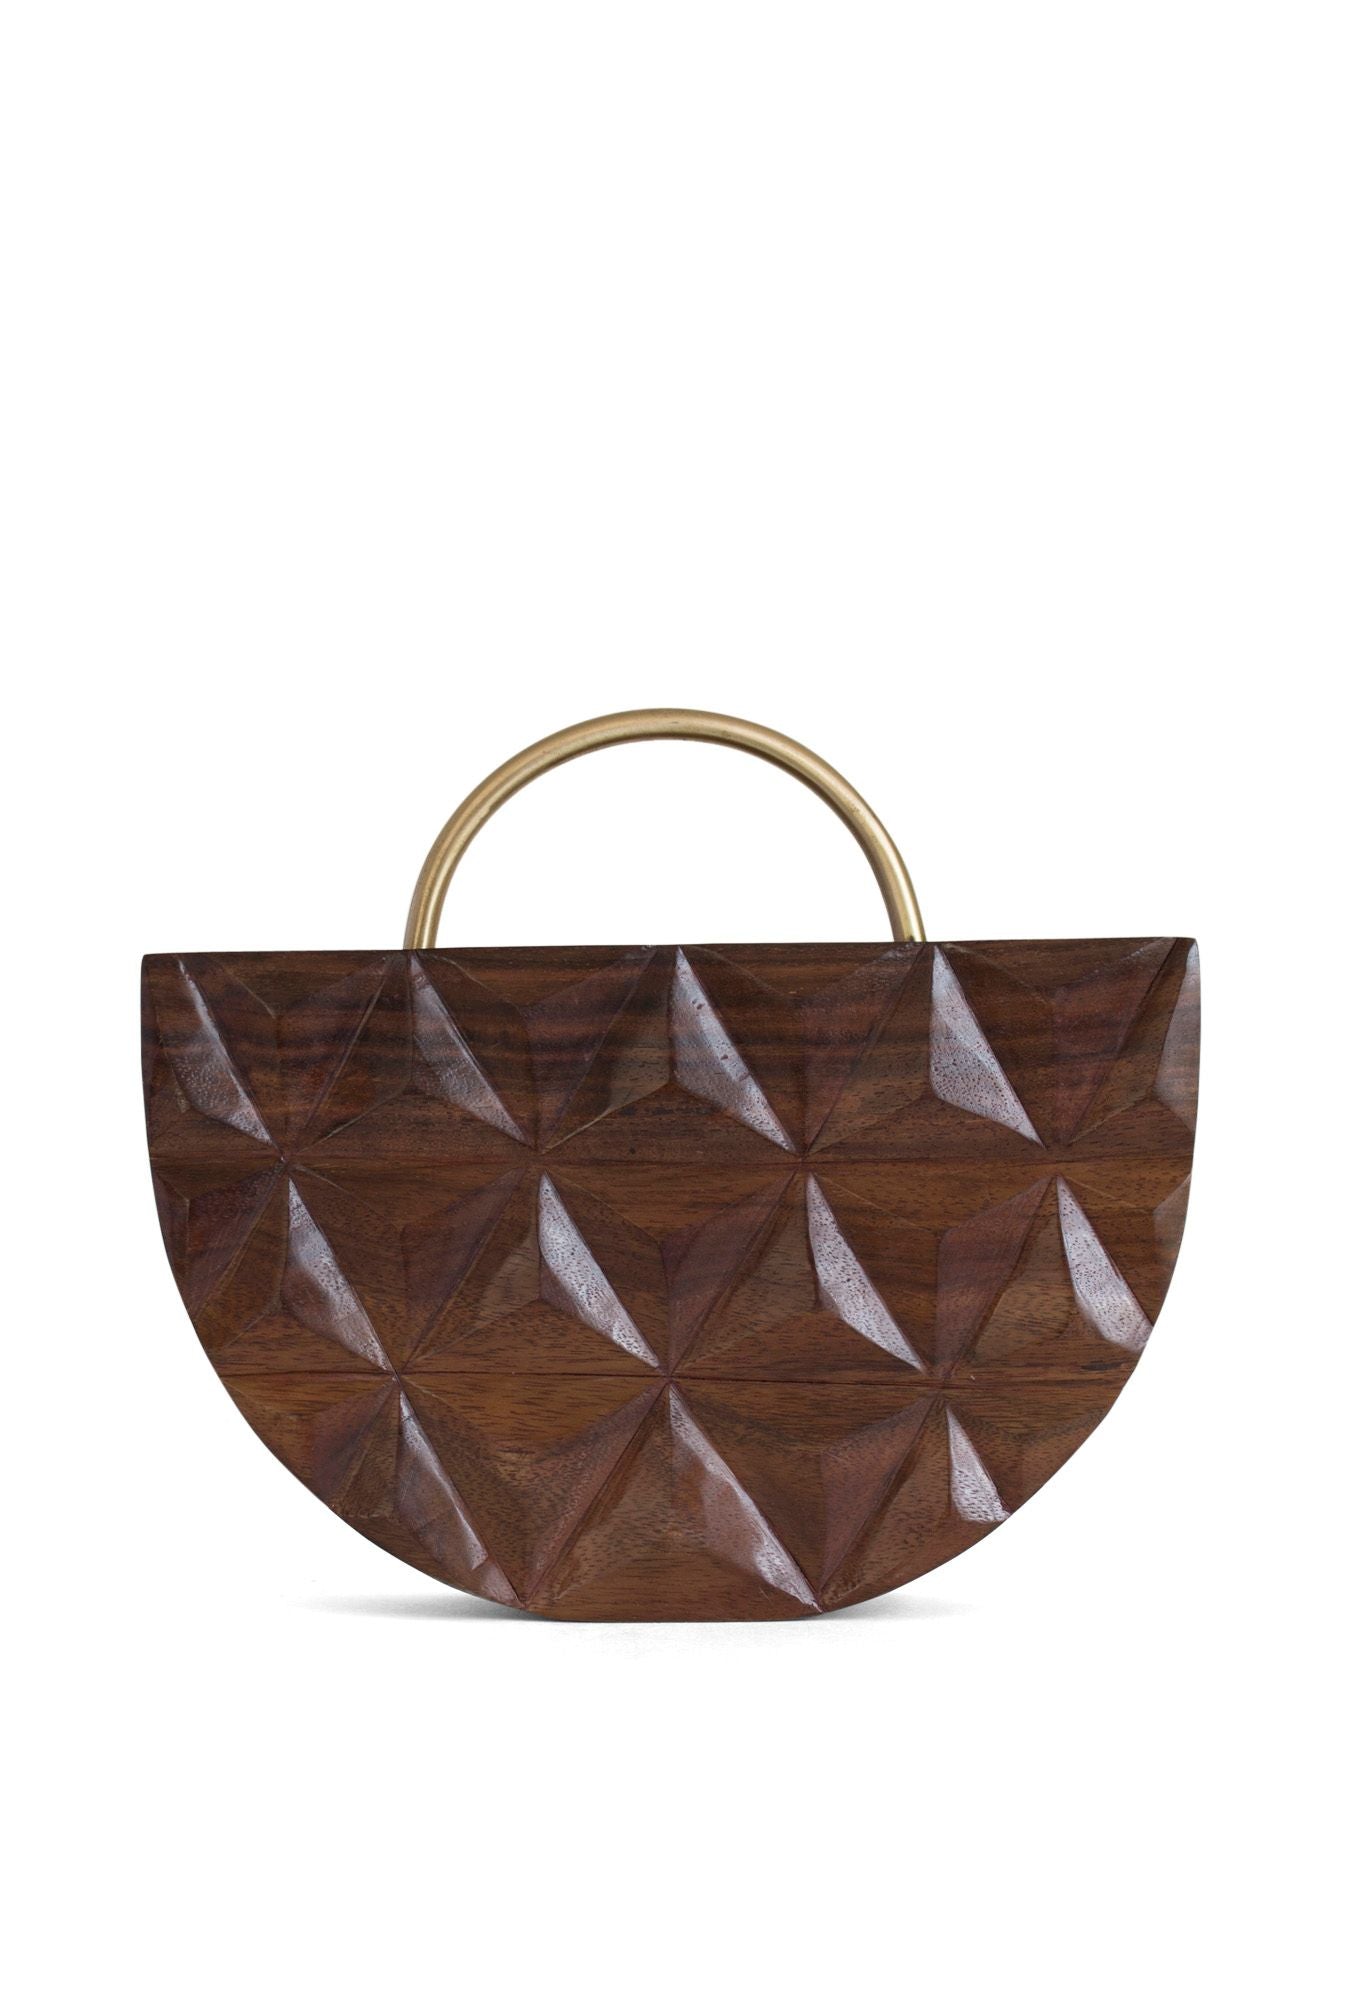 Gold Handle Carved Wood Bag